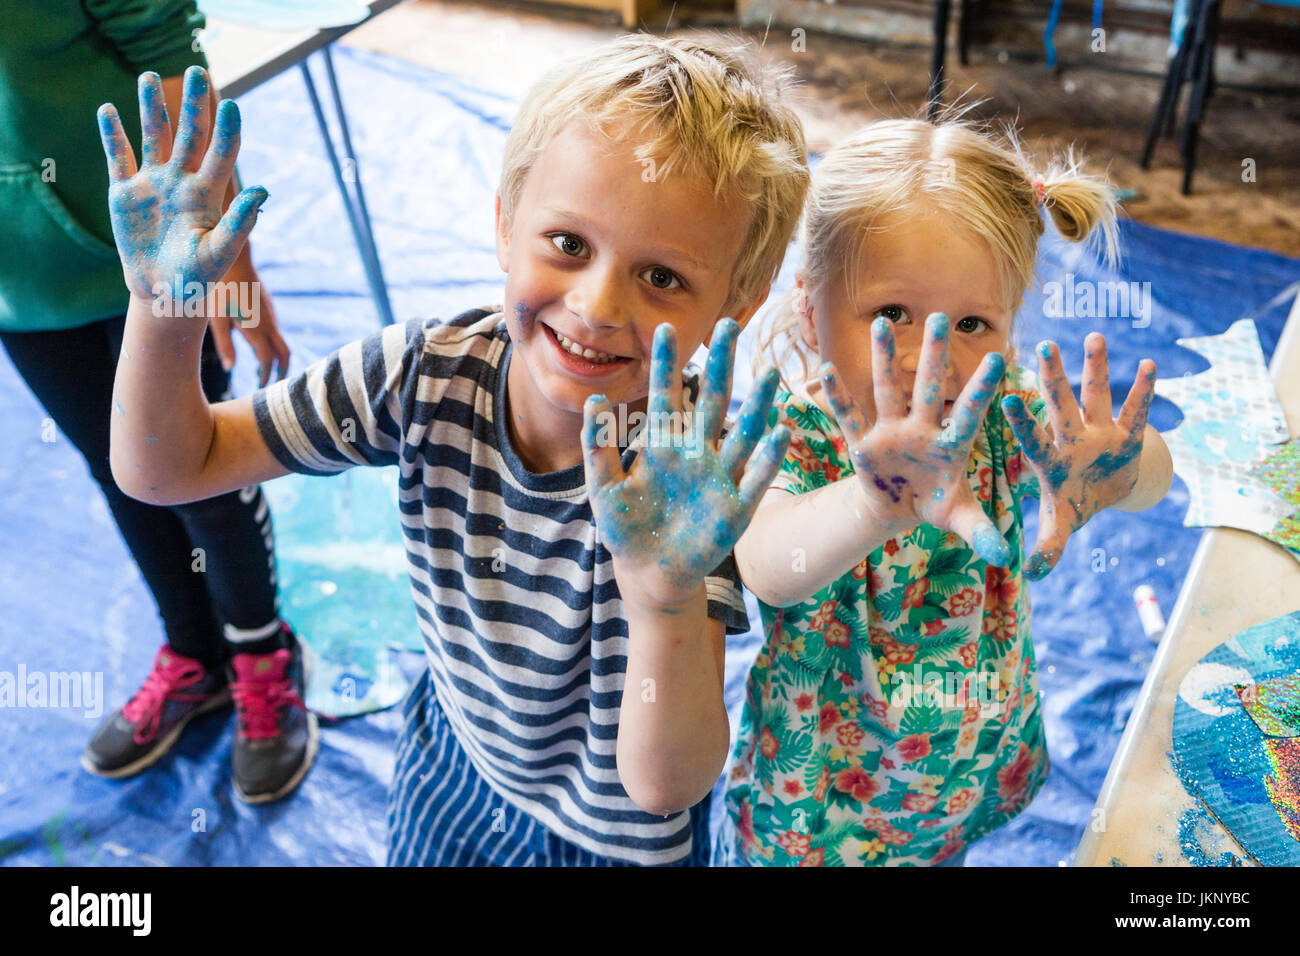 Smiling Caucasian blonde deux enfants, garçon, 5-6 ans, et une fille, 4-5 ans, frère et soeur, à la visualisation, au contact des yeux, montrant leurs mains peintes en désordre après un atelier d'art et d'artisanat. Banque D'Images